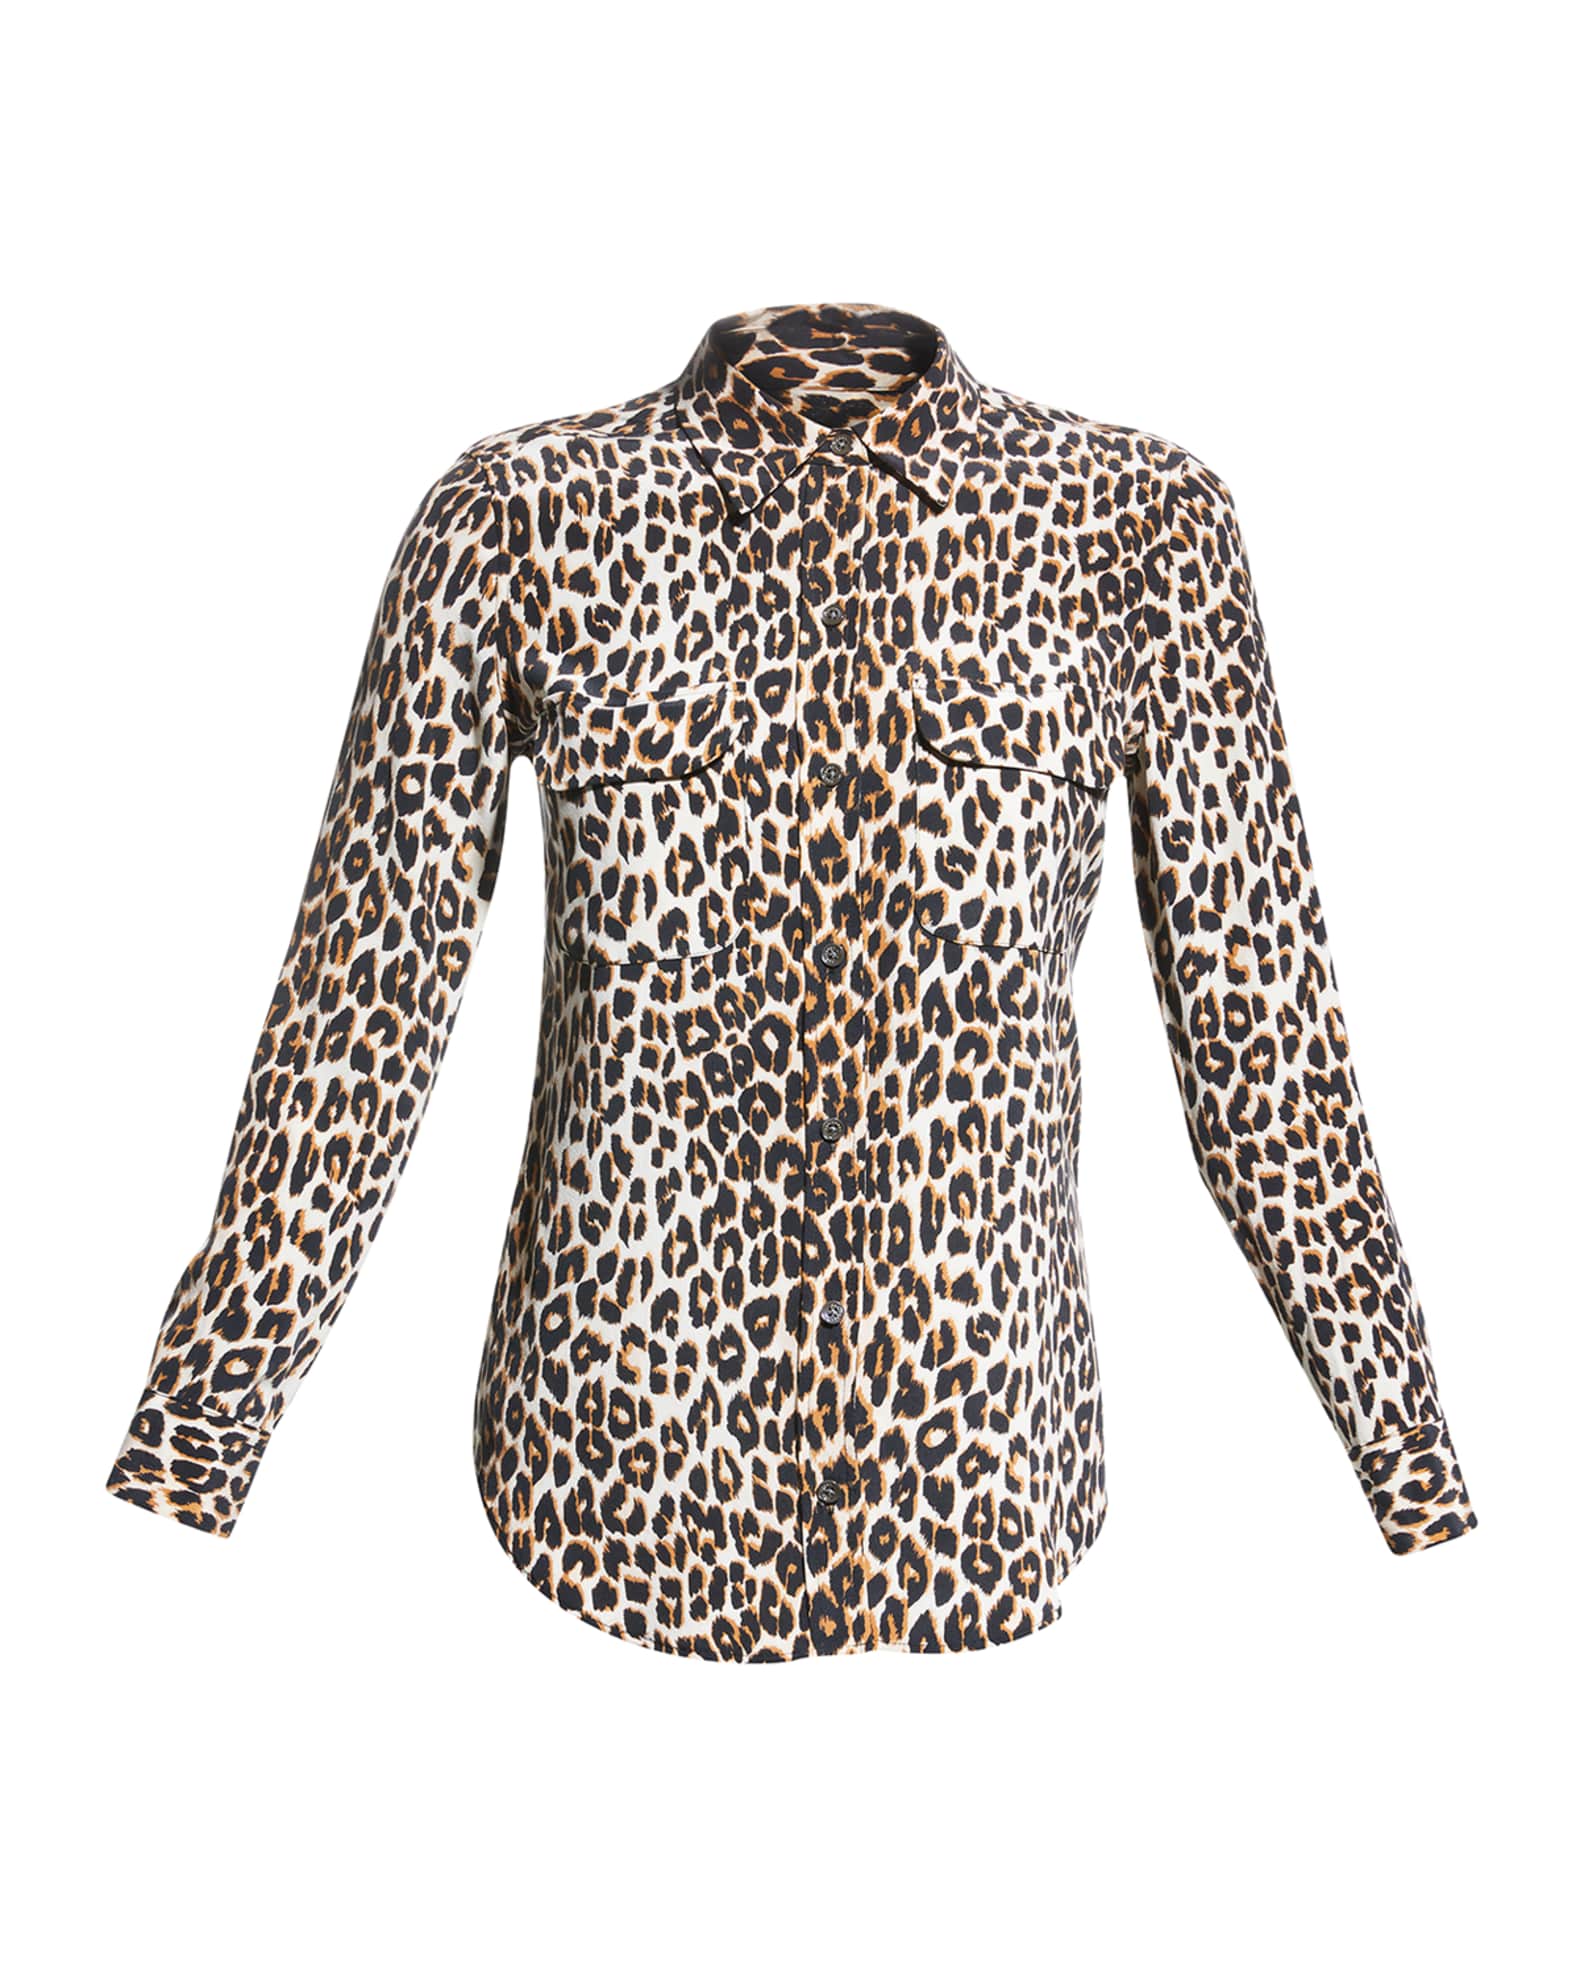 Equipment Slim Signature Leopard-Print Blouse | Neiman Marcus